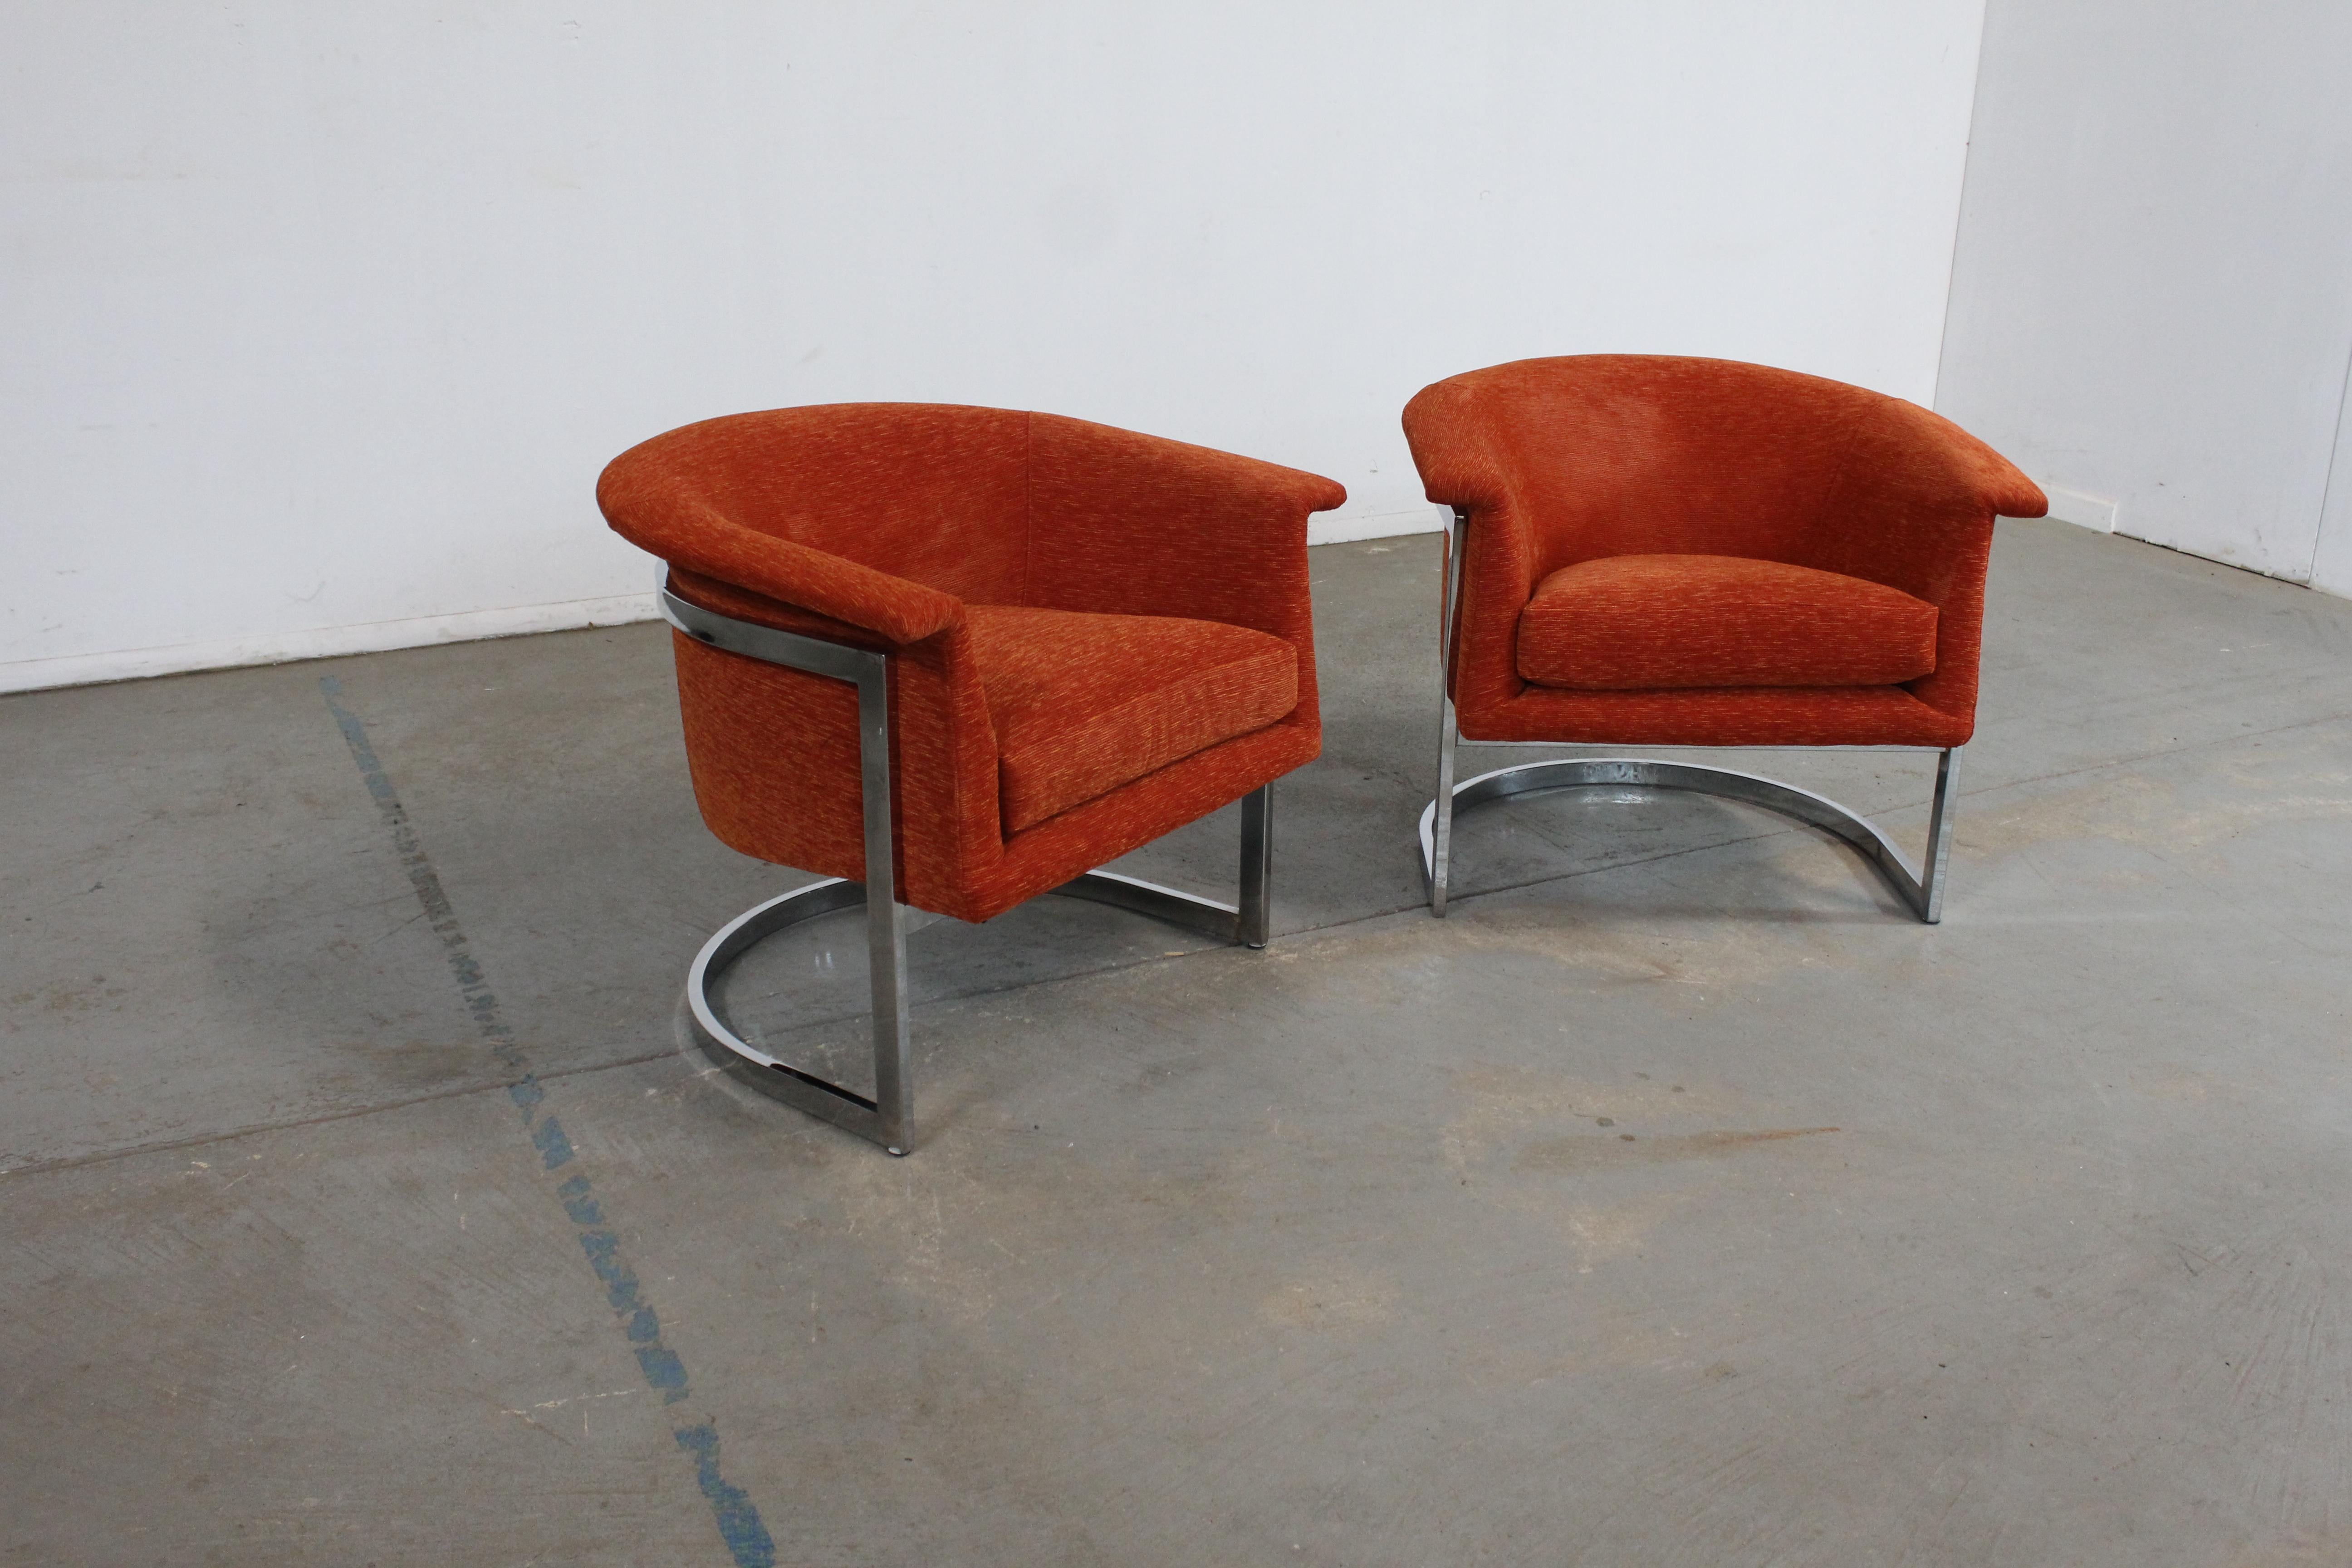 Paar Mid-Century Modern Craft Associates Chrome Barrel Back Club Chairs

Angeboten wird ein Paar wunderschön restaurierte Stühle von Craft Associates aus der Jahrhundertmitte. Dieses von Adrian Pearsall entworfene Paar fängt die Essenz der modernen